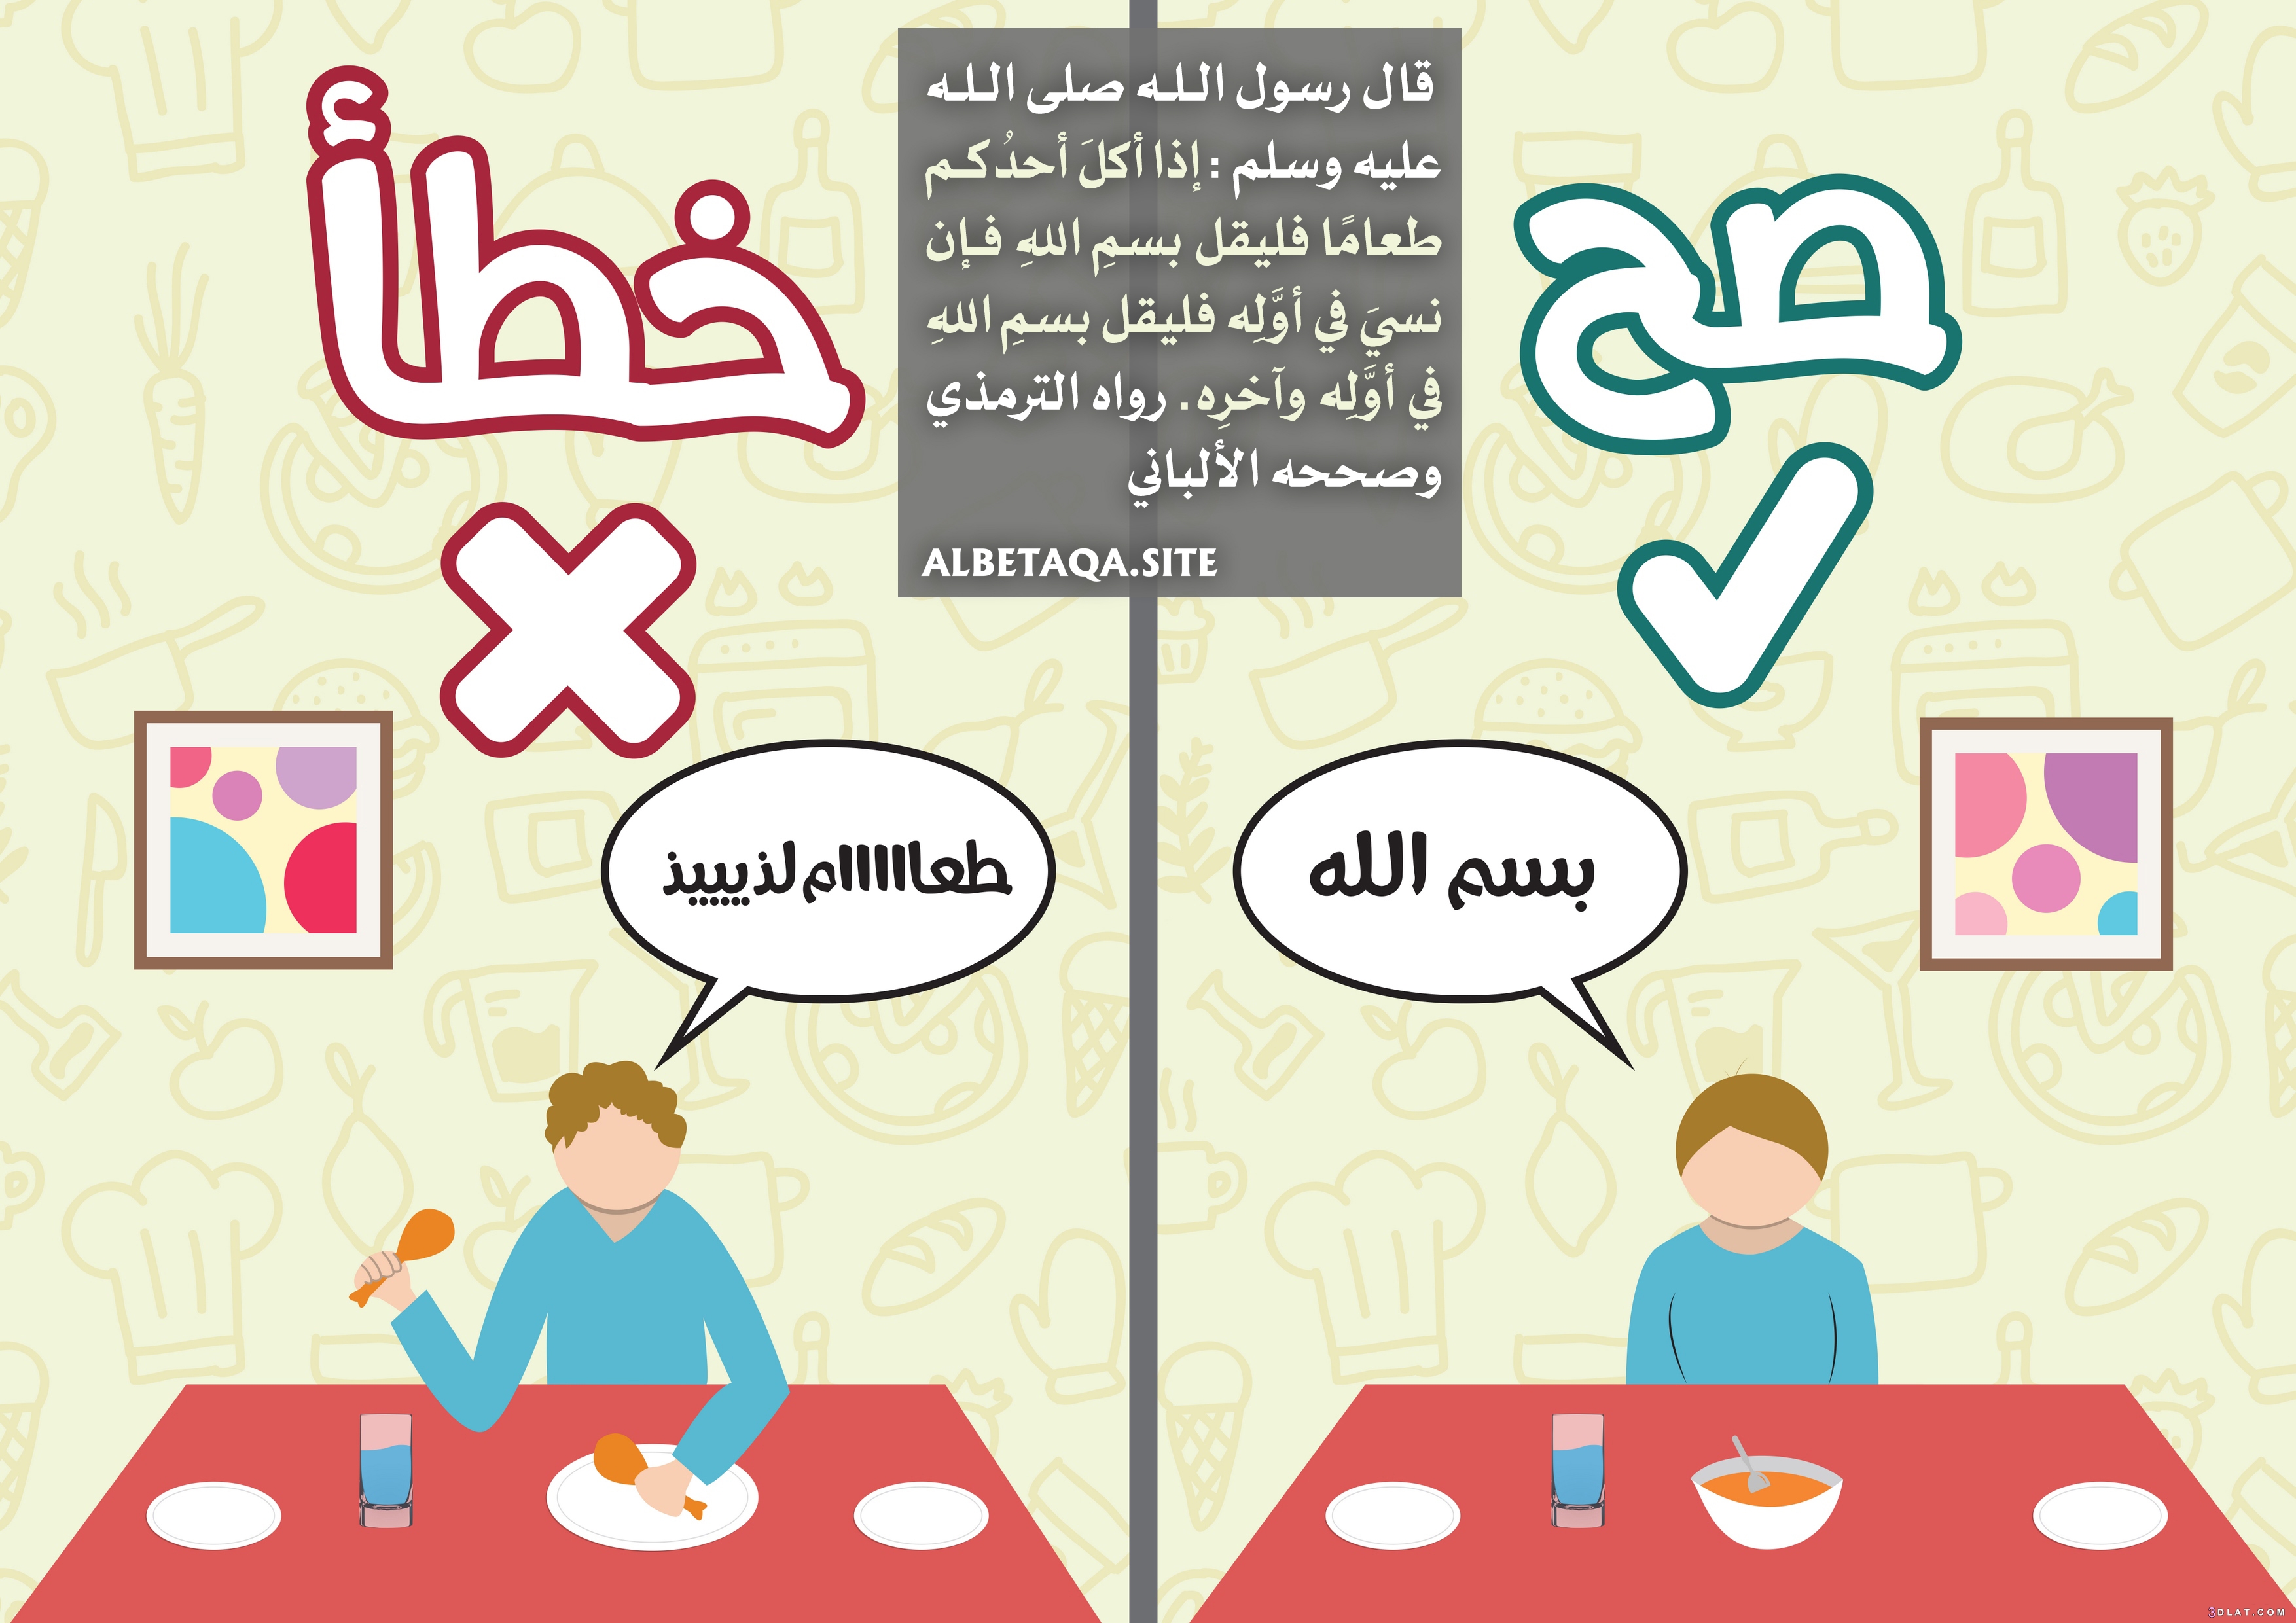 تعليم المتضادات للاطفال Pdf وسائل تعليمية حديثة بالصور بالعربي نتعلم Vault Boy Character Family Guy